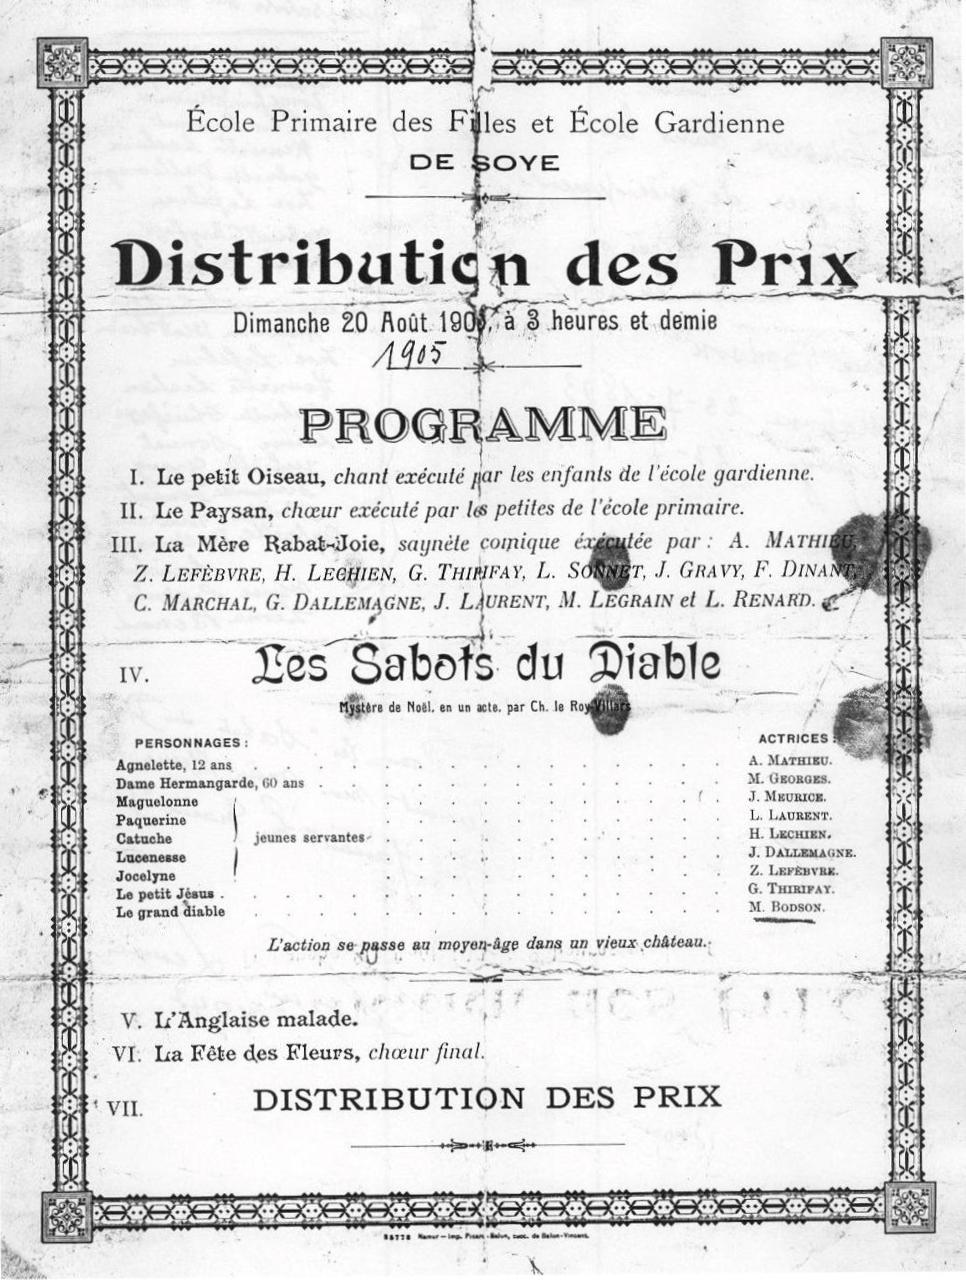 Soye – école primaire des filles – école gardienne – distribution des prix – 1905